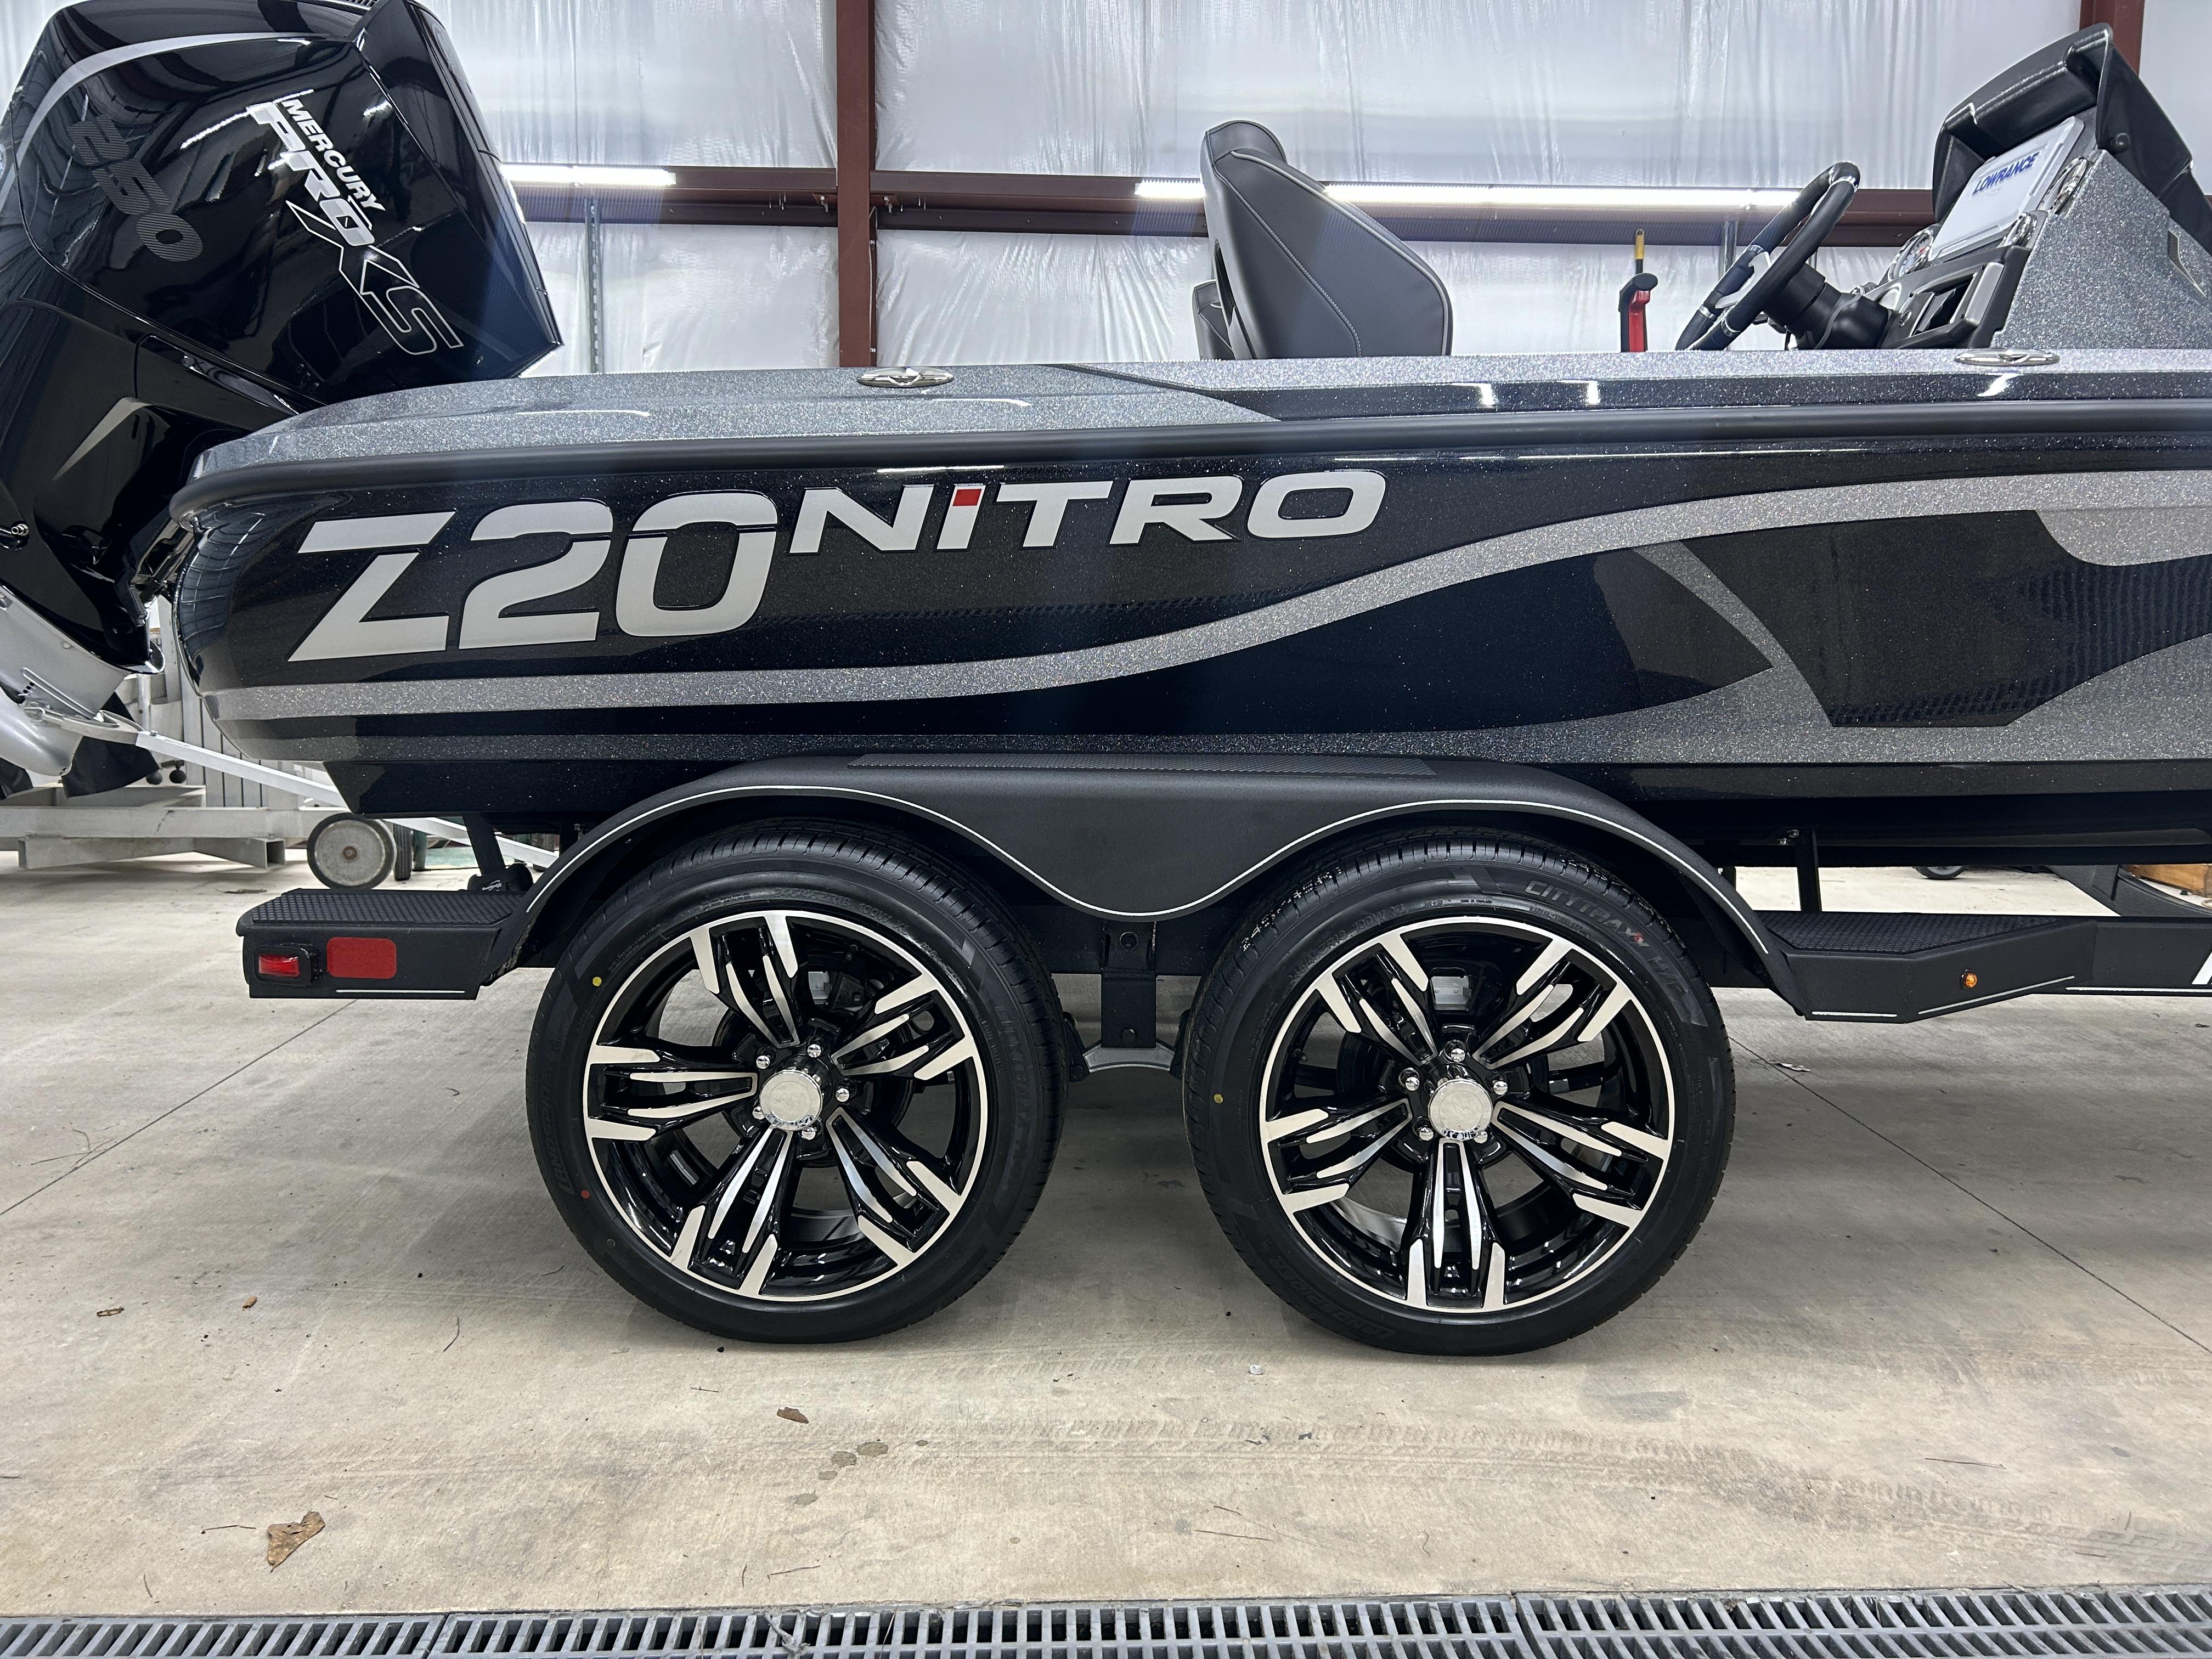 2024 Nitro Z20 Pro